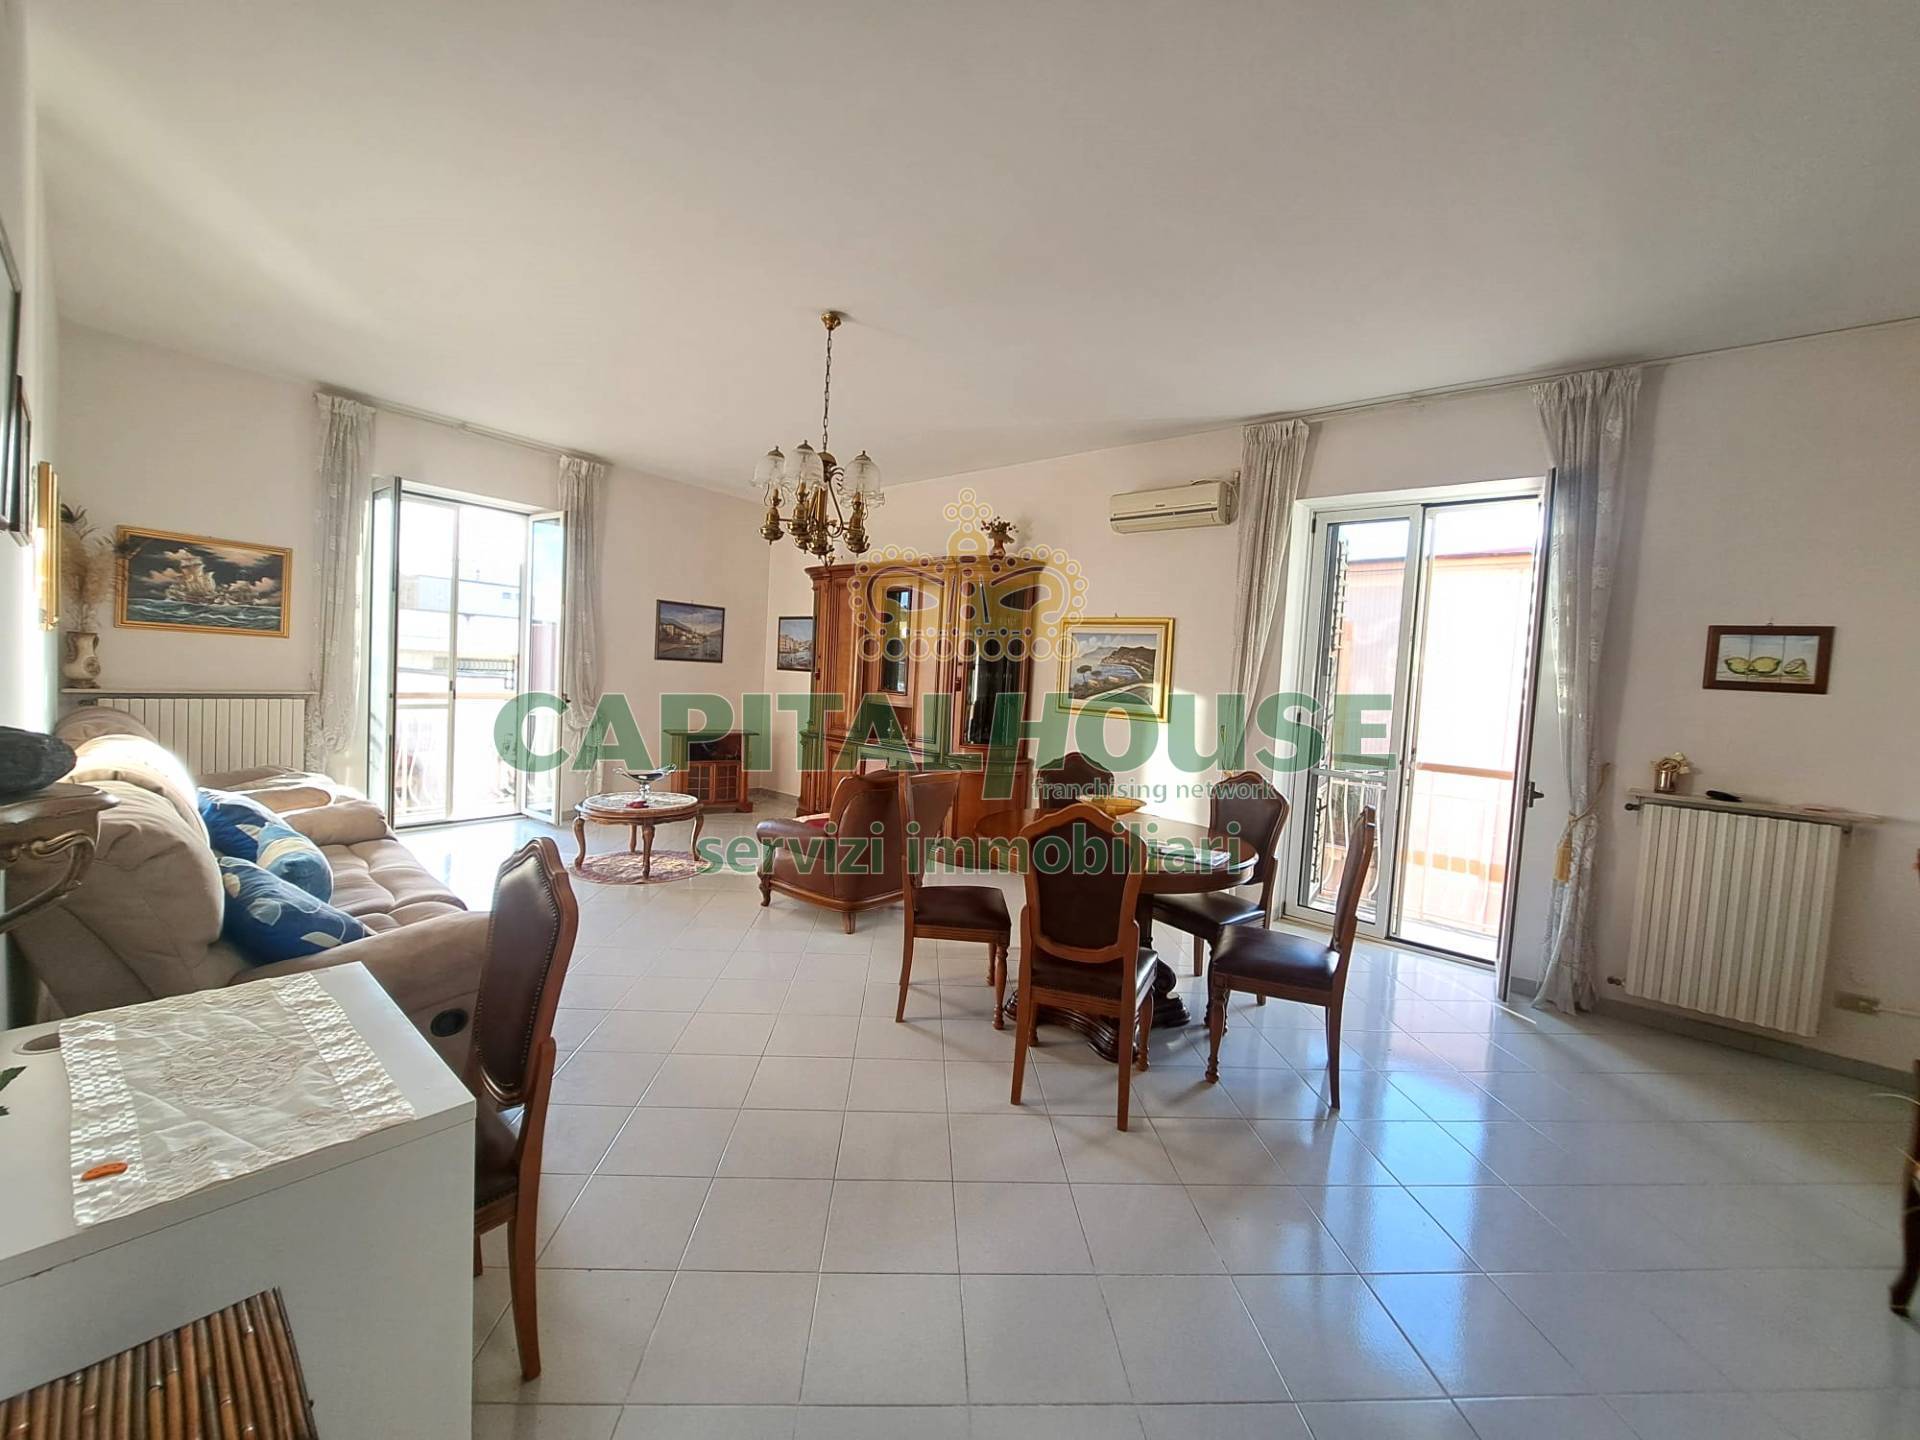 Appartamento in vendita a Cicciano, 4 locali, prezzo € 130.000 | CambioCasa.it